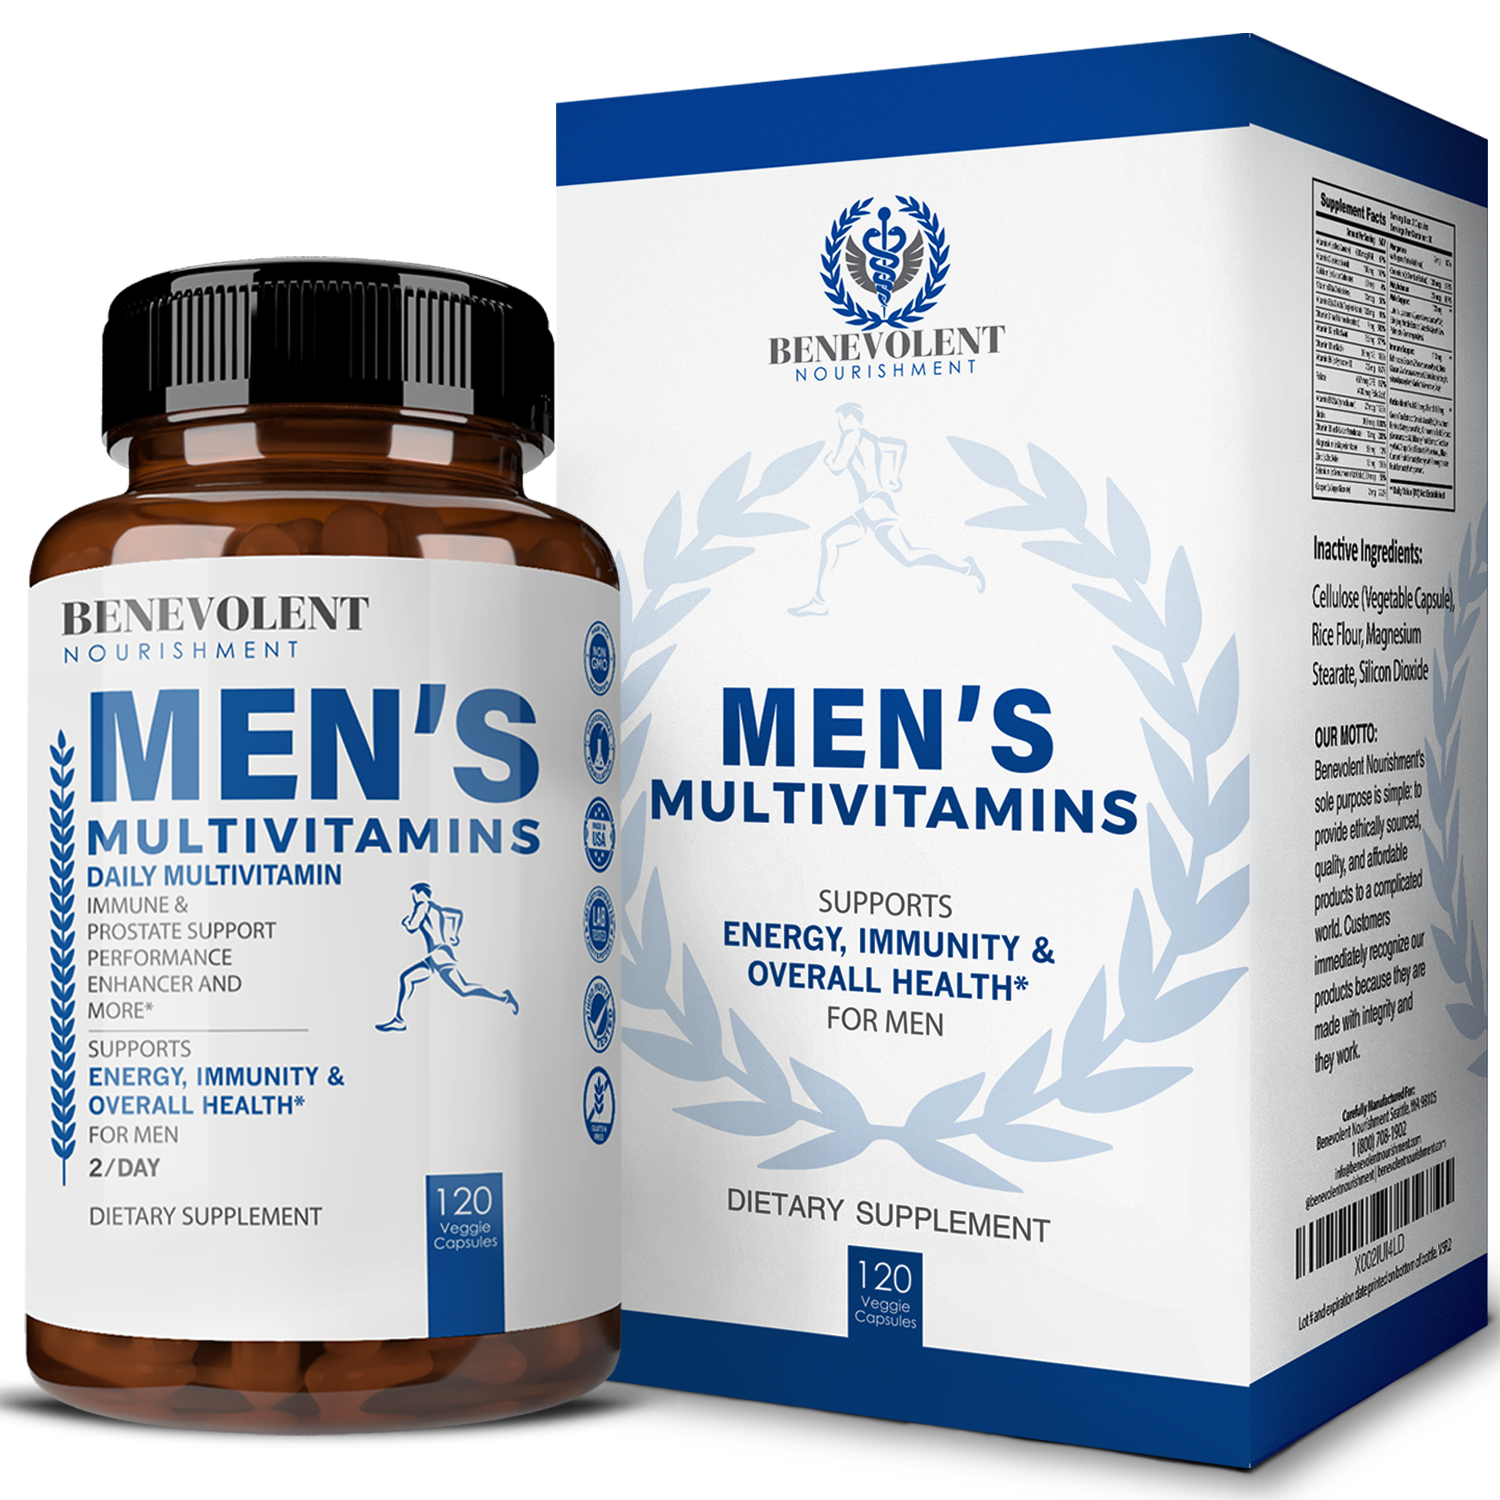 Multivitamin For Men box and bottle